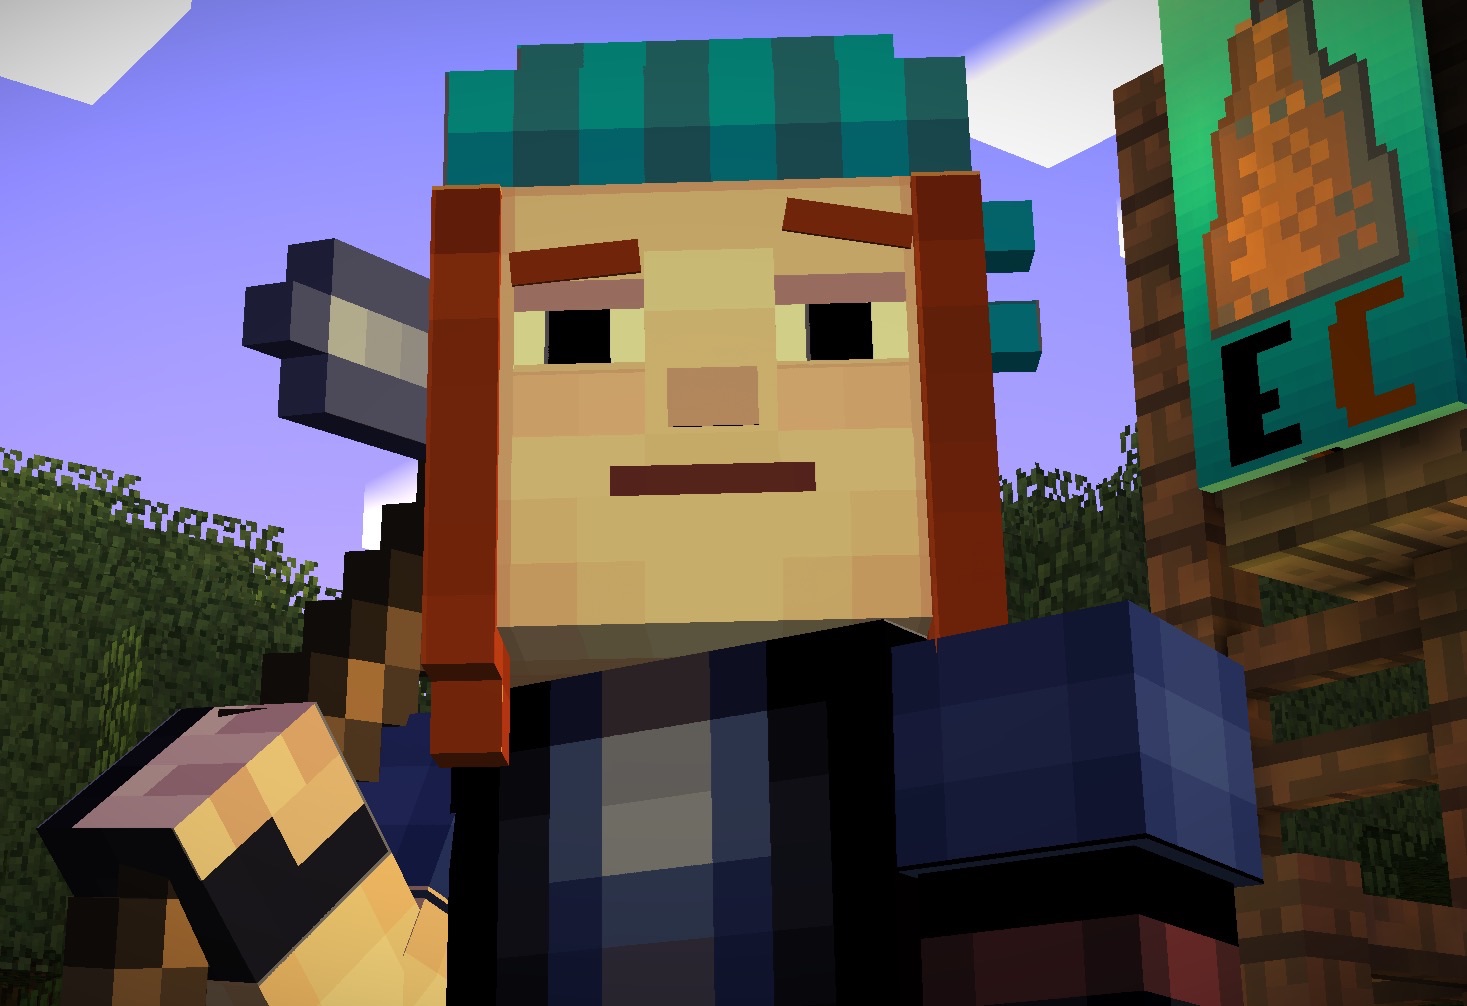 Welk Minecraft: Story Mode karakter ben jij? - Uitkomsten - Qreaties.nl